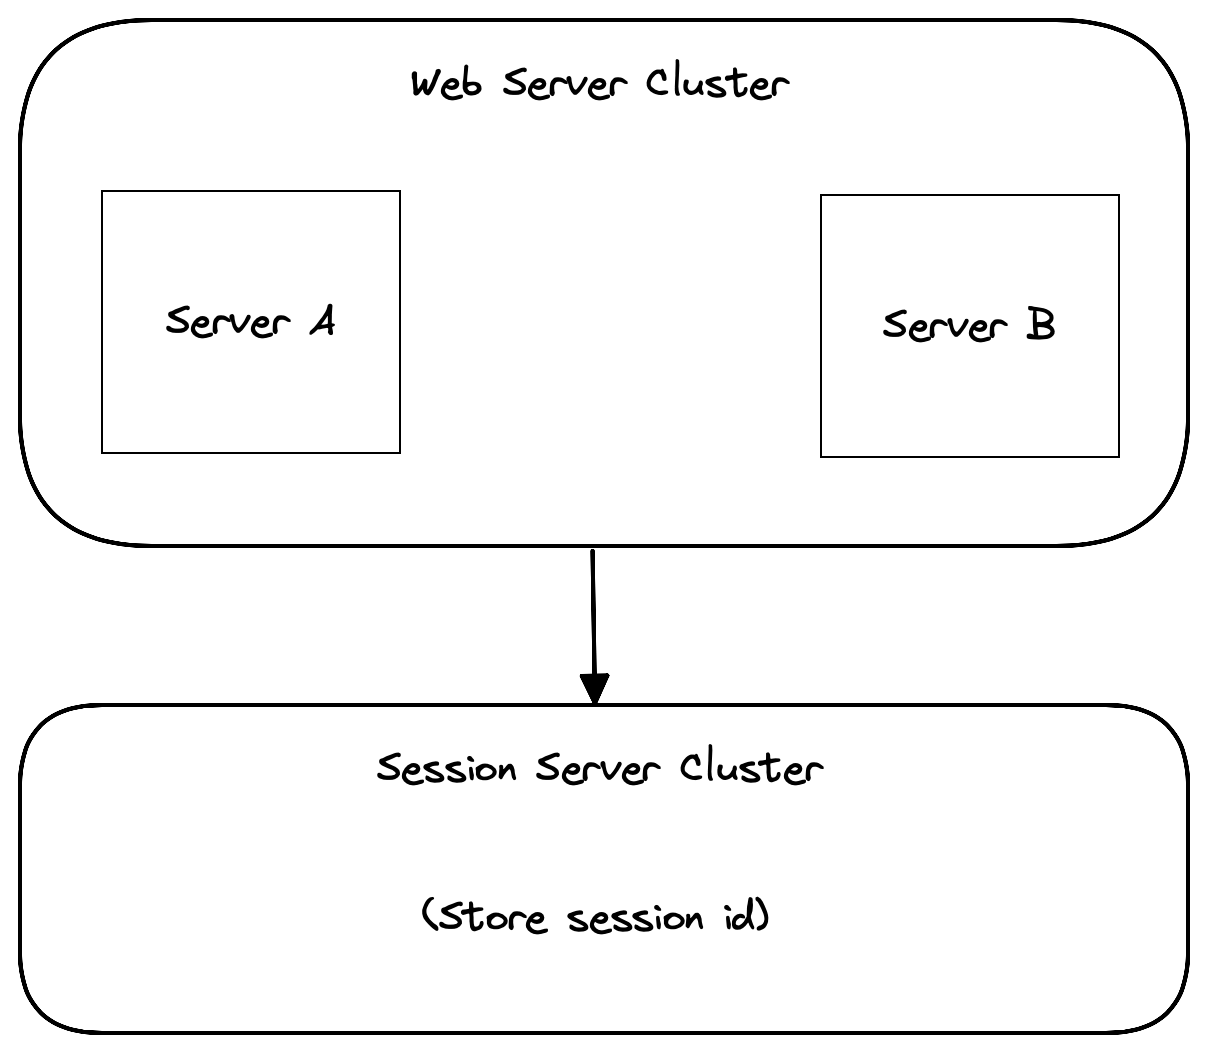 Web server cluster and session server cluster